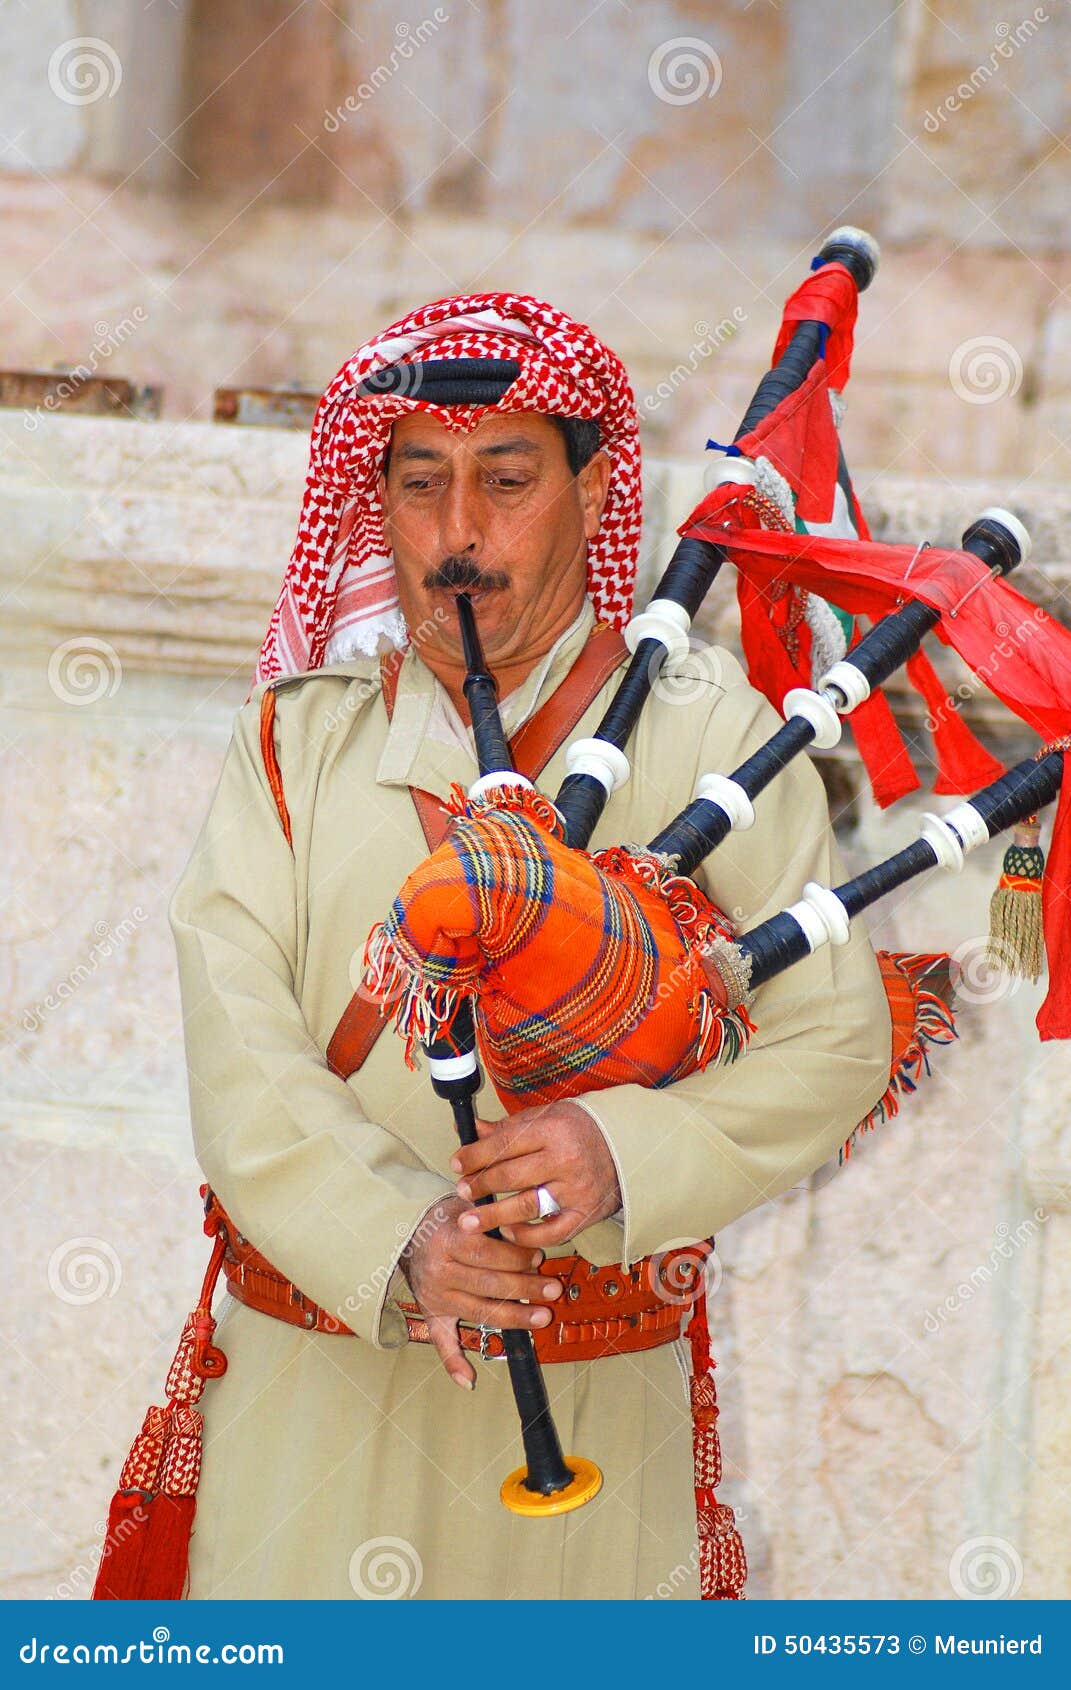 https://thumbs.dreamstime.com/z/bedouin-play-bagpipe-jerash-jordan-november-november-jerash-jordan-bagpipes-came-arab-instrument-scottish-troop-50435573.jpg